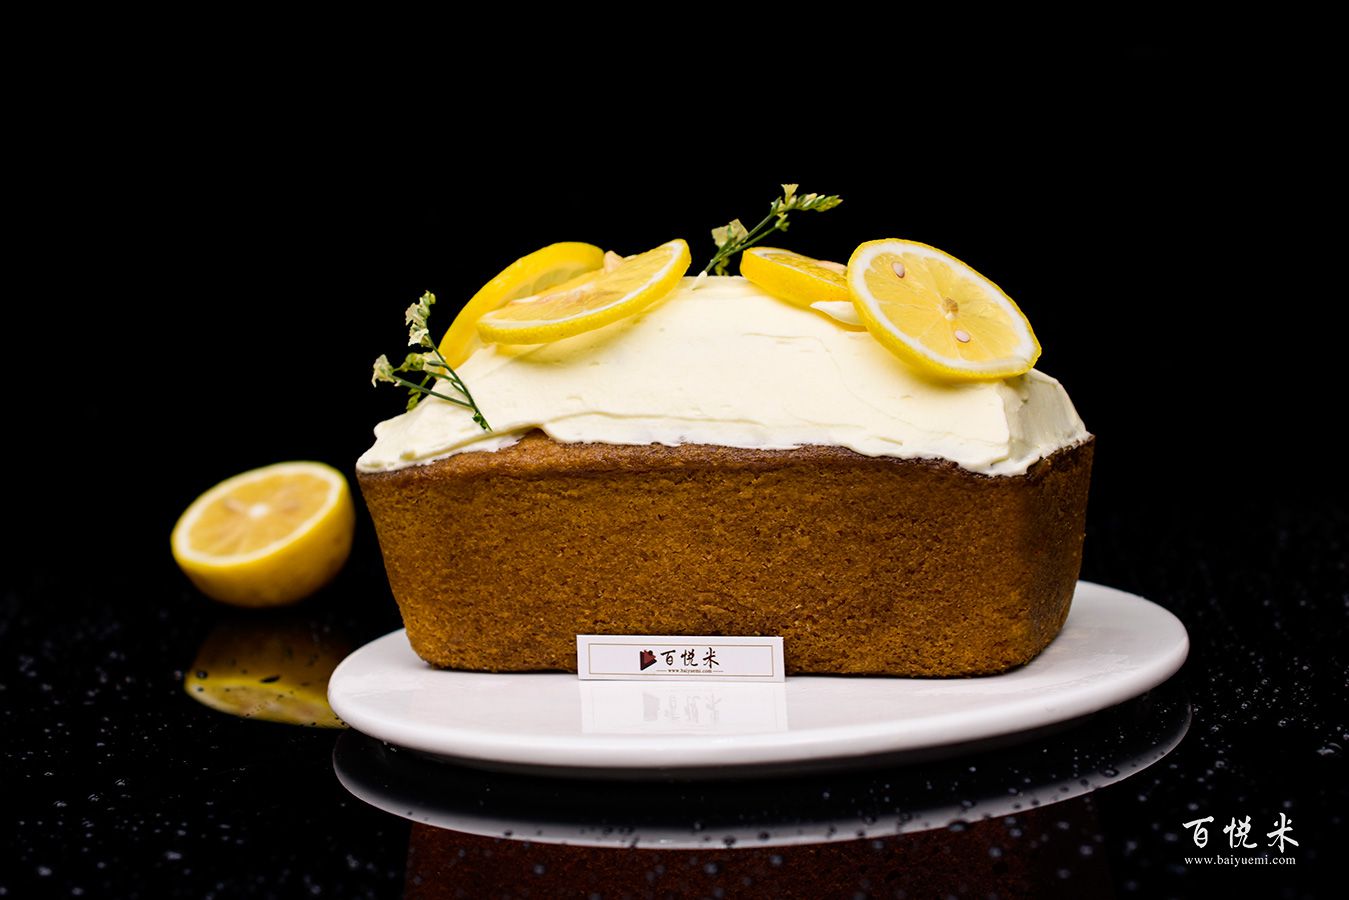 柠檬奶油磅蛋糕高清图片大全【蛋糕图片】_69